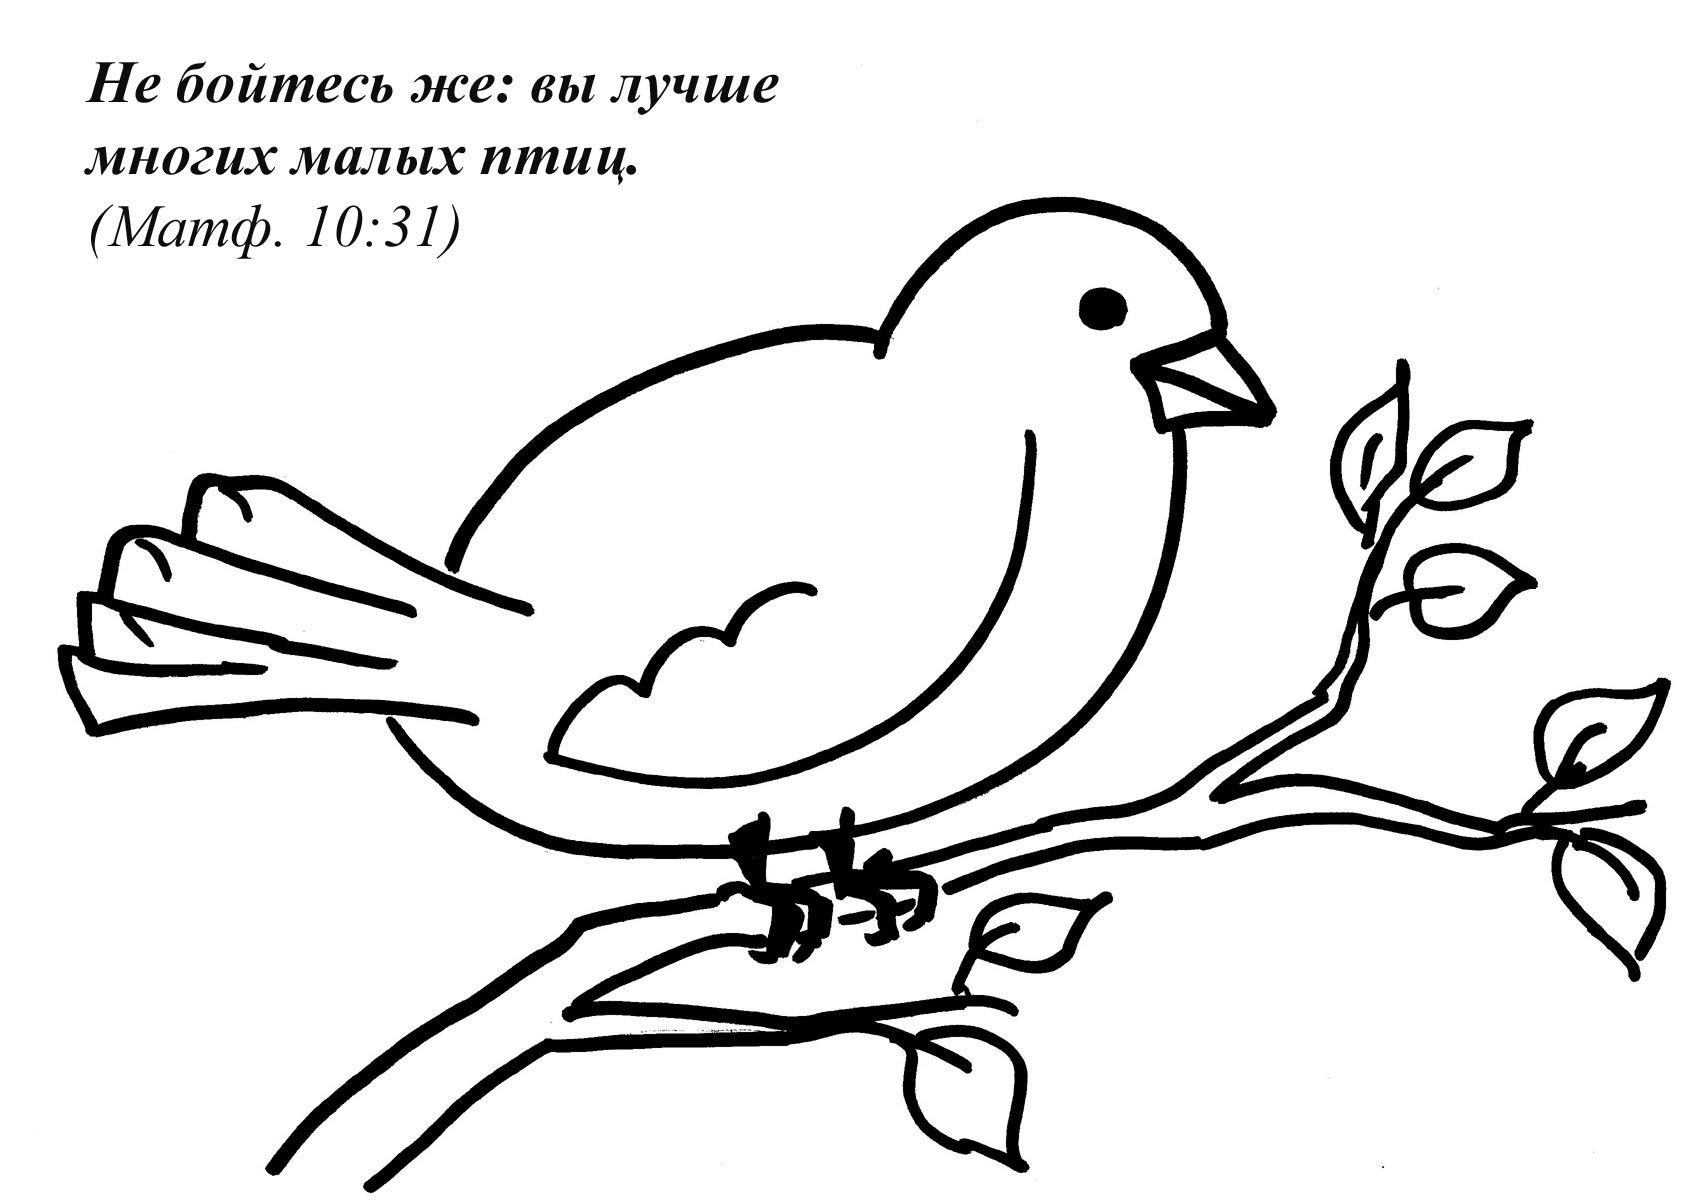 Иллюстрация к стихотворению дети и птичка